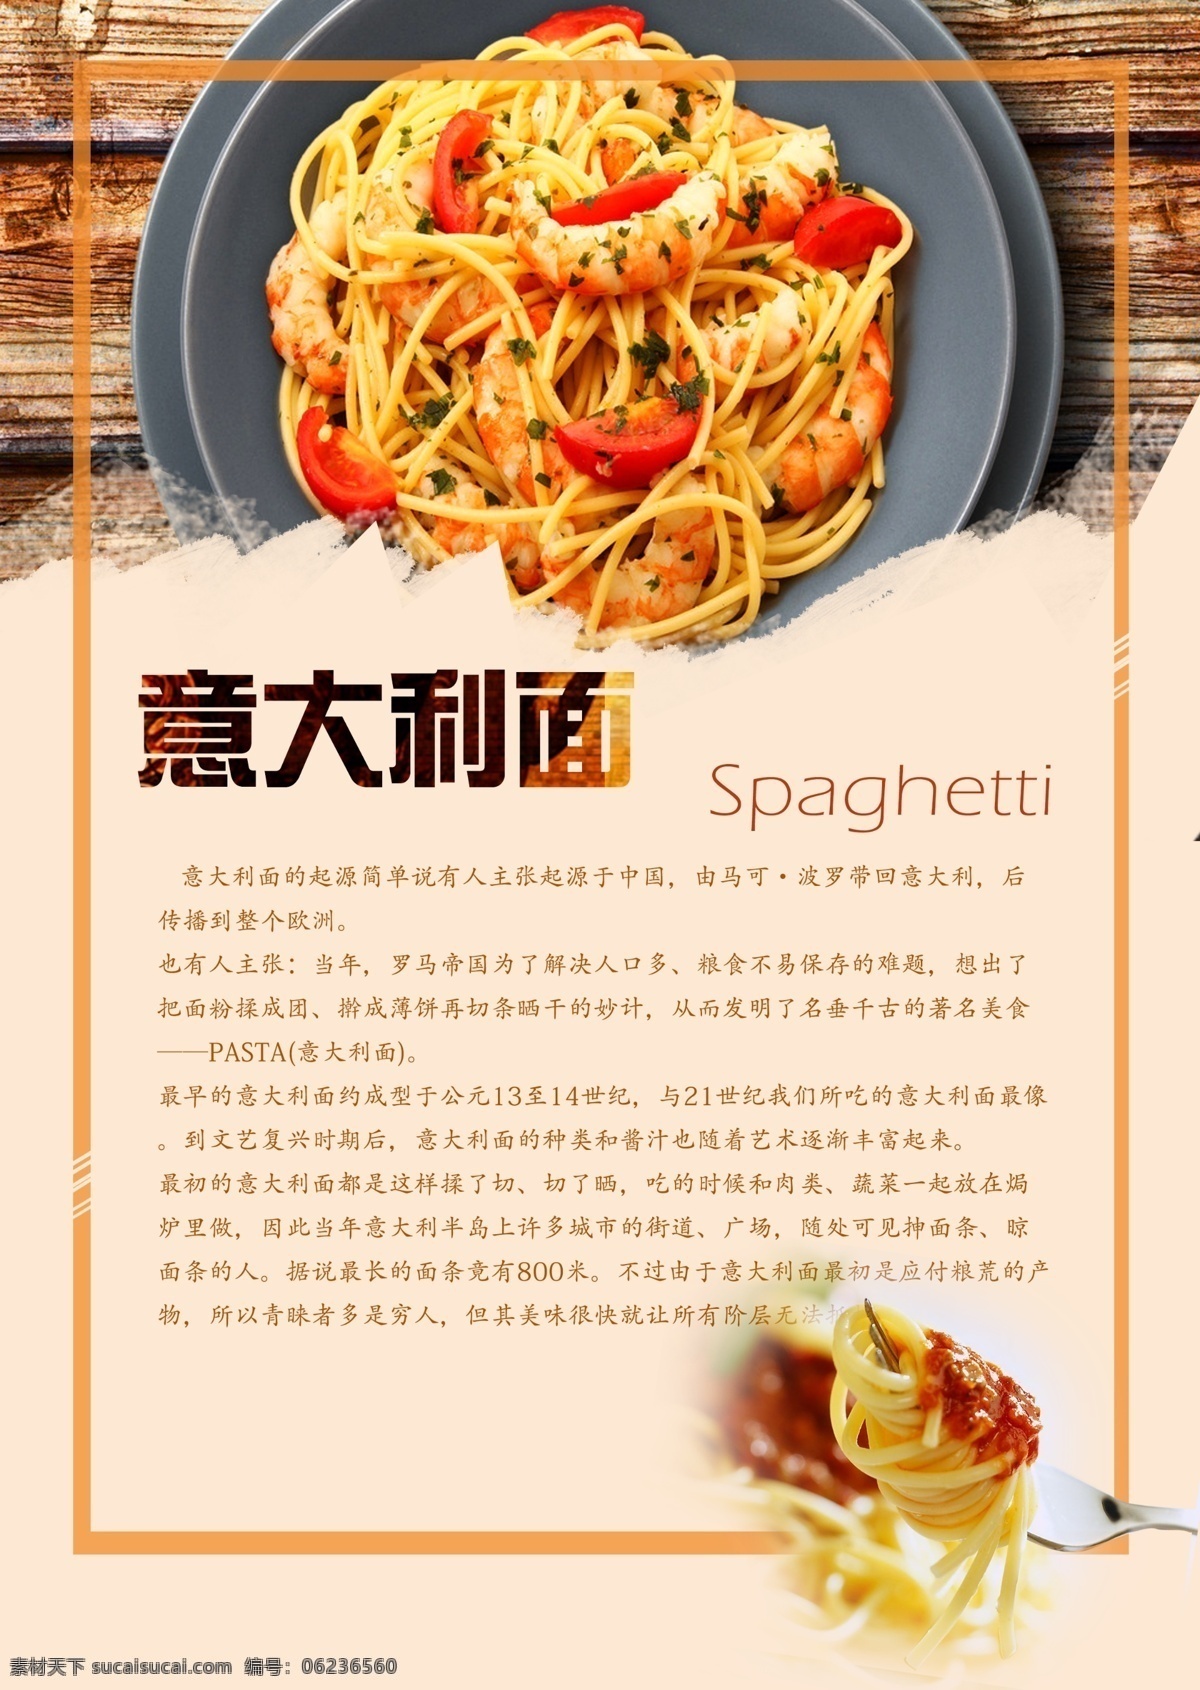 意大利 菜单 菜谱 食物 餐厅 海报 菜单菜谱